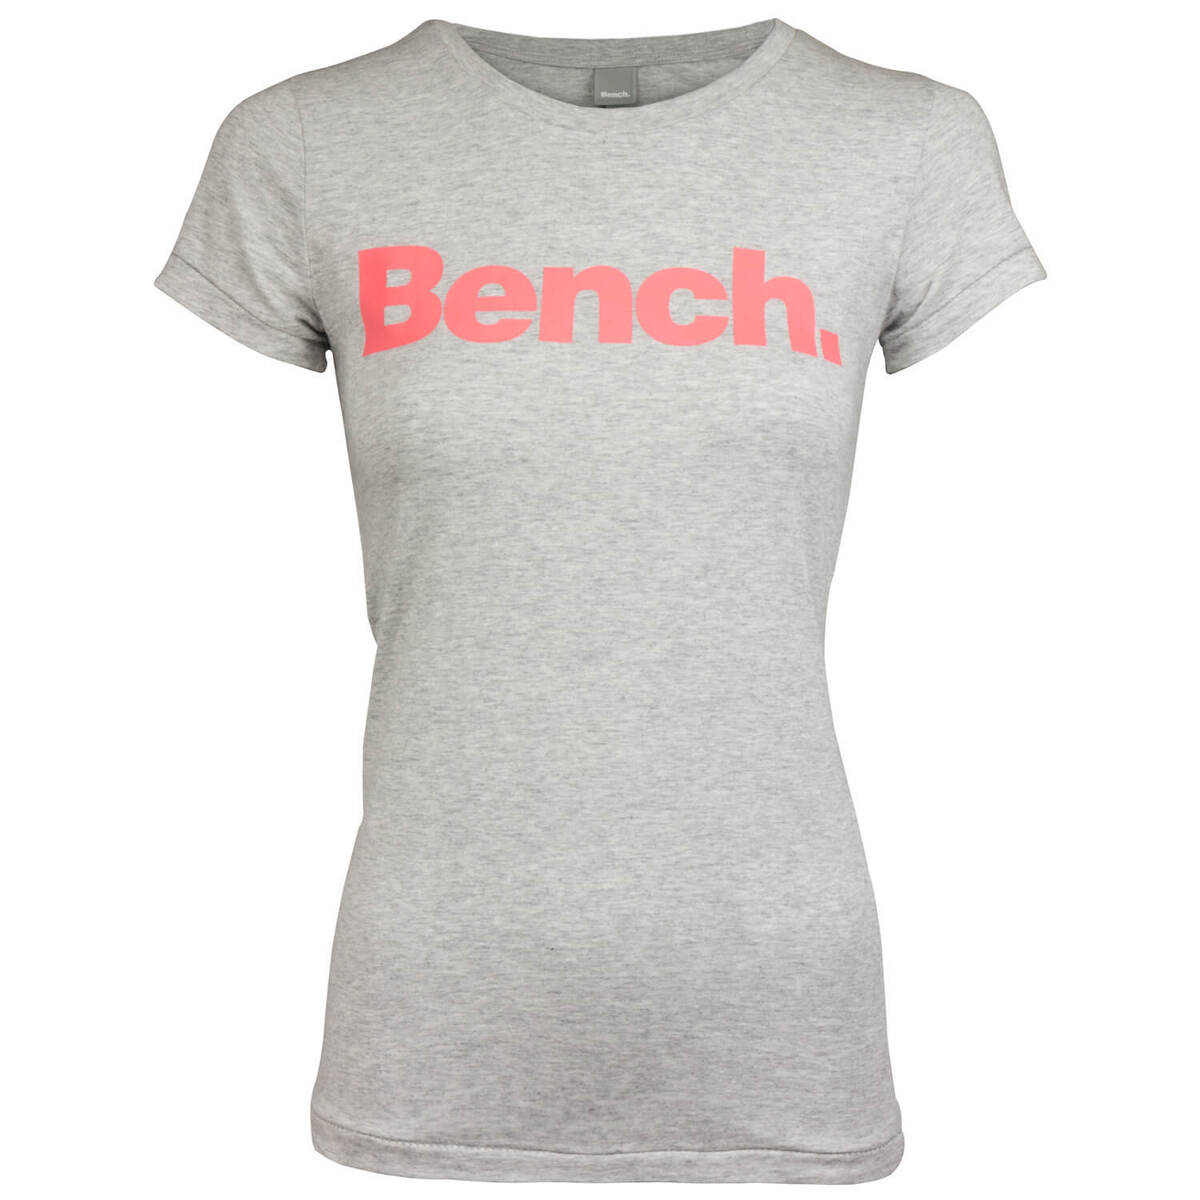 Bench. Damen T-Shirt eBay Shirt Rundhals-Ausschnitt tailliert Top Label Print | Basic